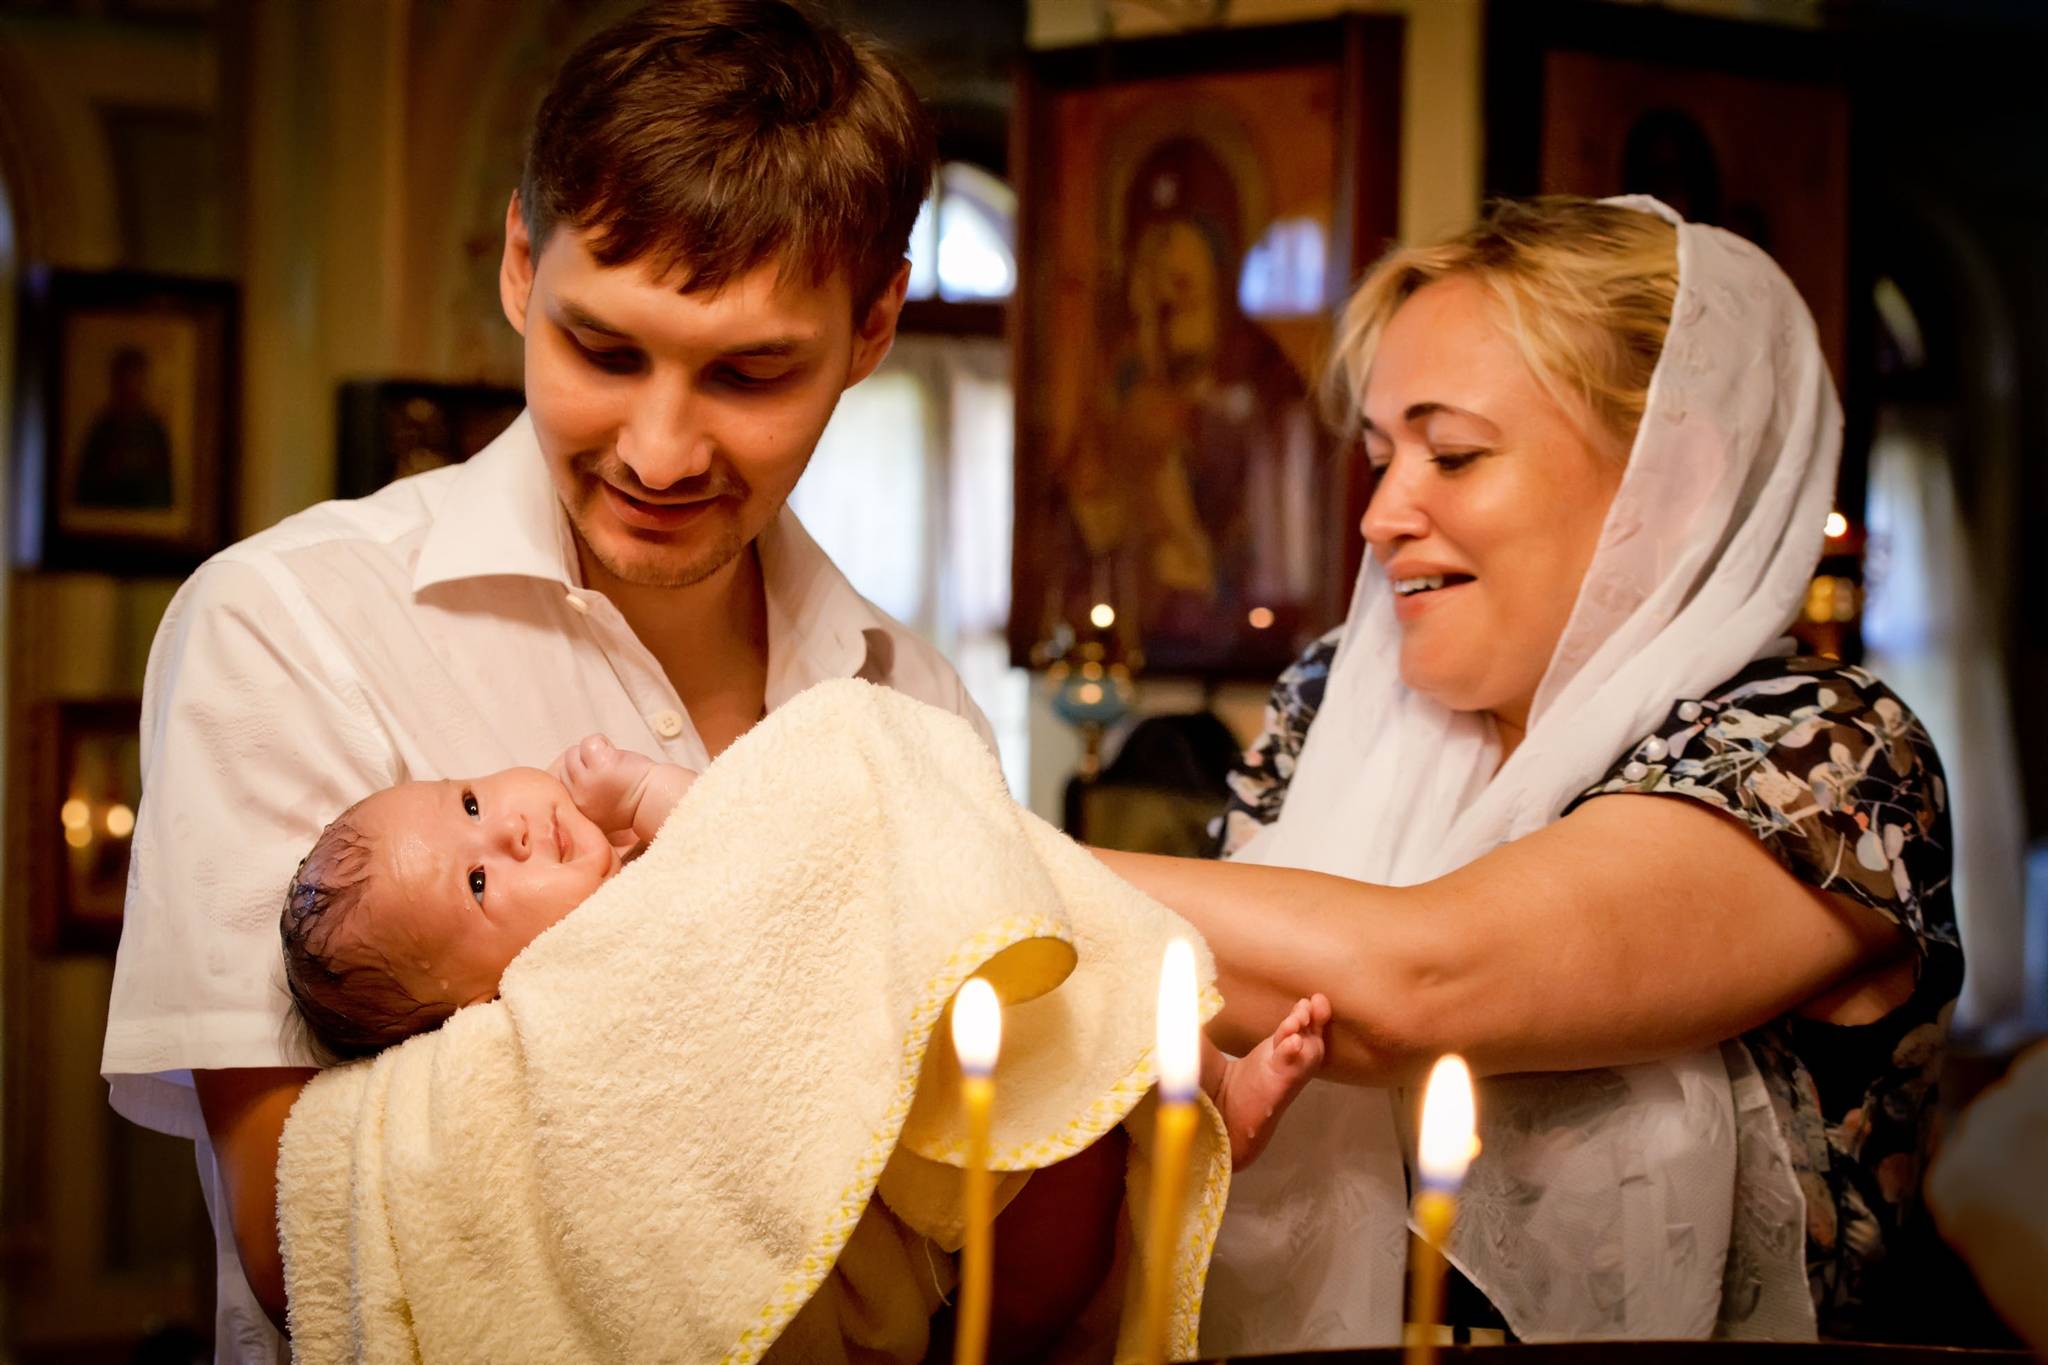 Крещение ребенка - когда и как проводят обряд